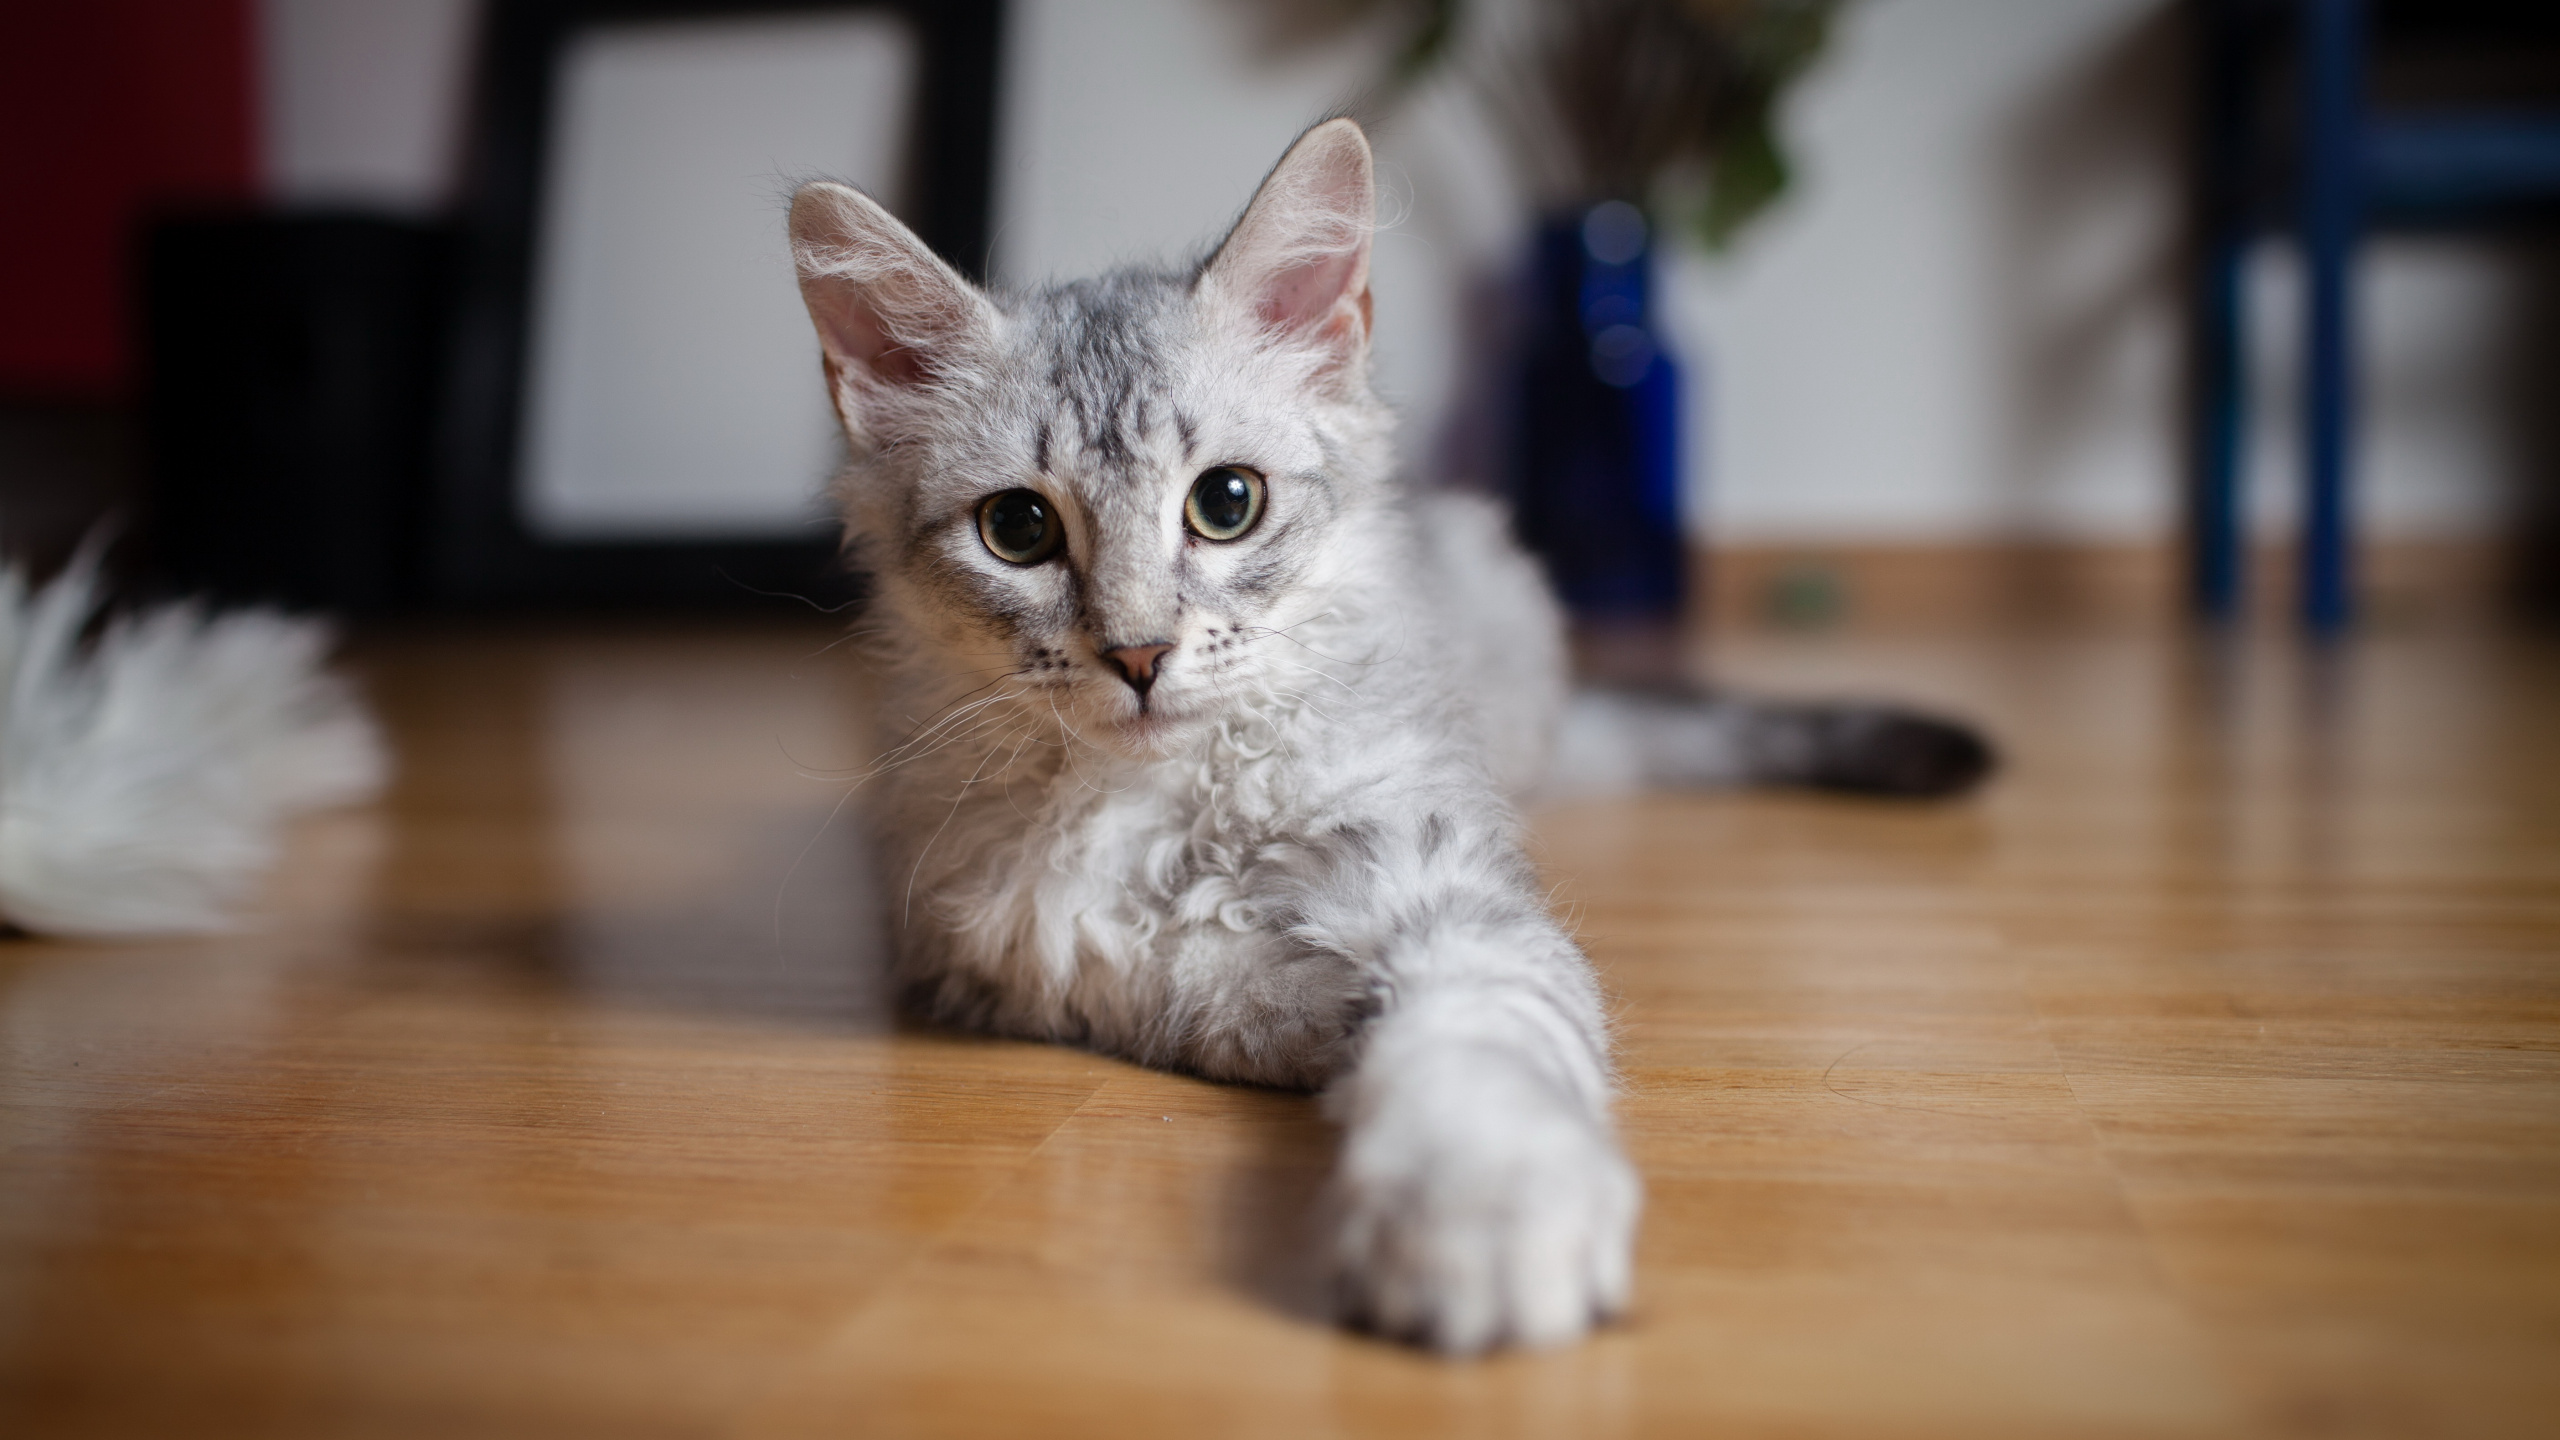 小猫, 土耳其安哥拉, 英国短毛猫, 缅因, 中小型猫 壁纸 2560x1440 允许